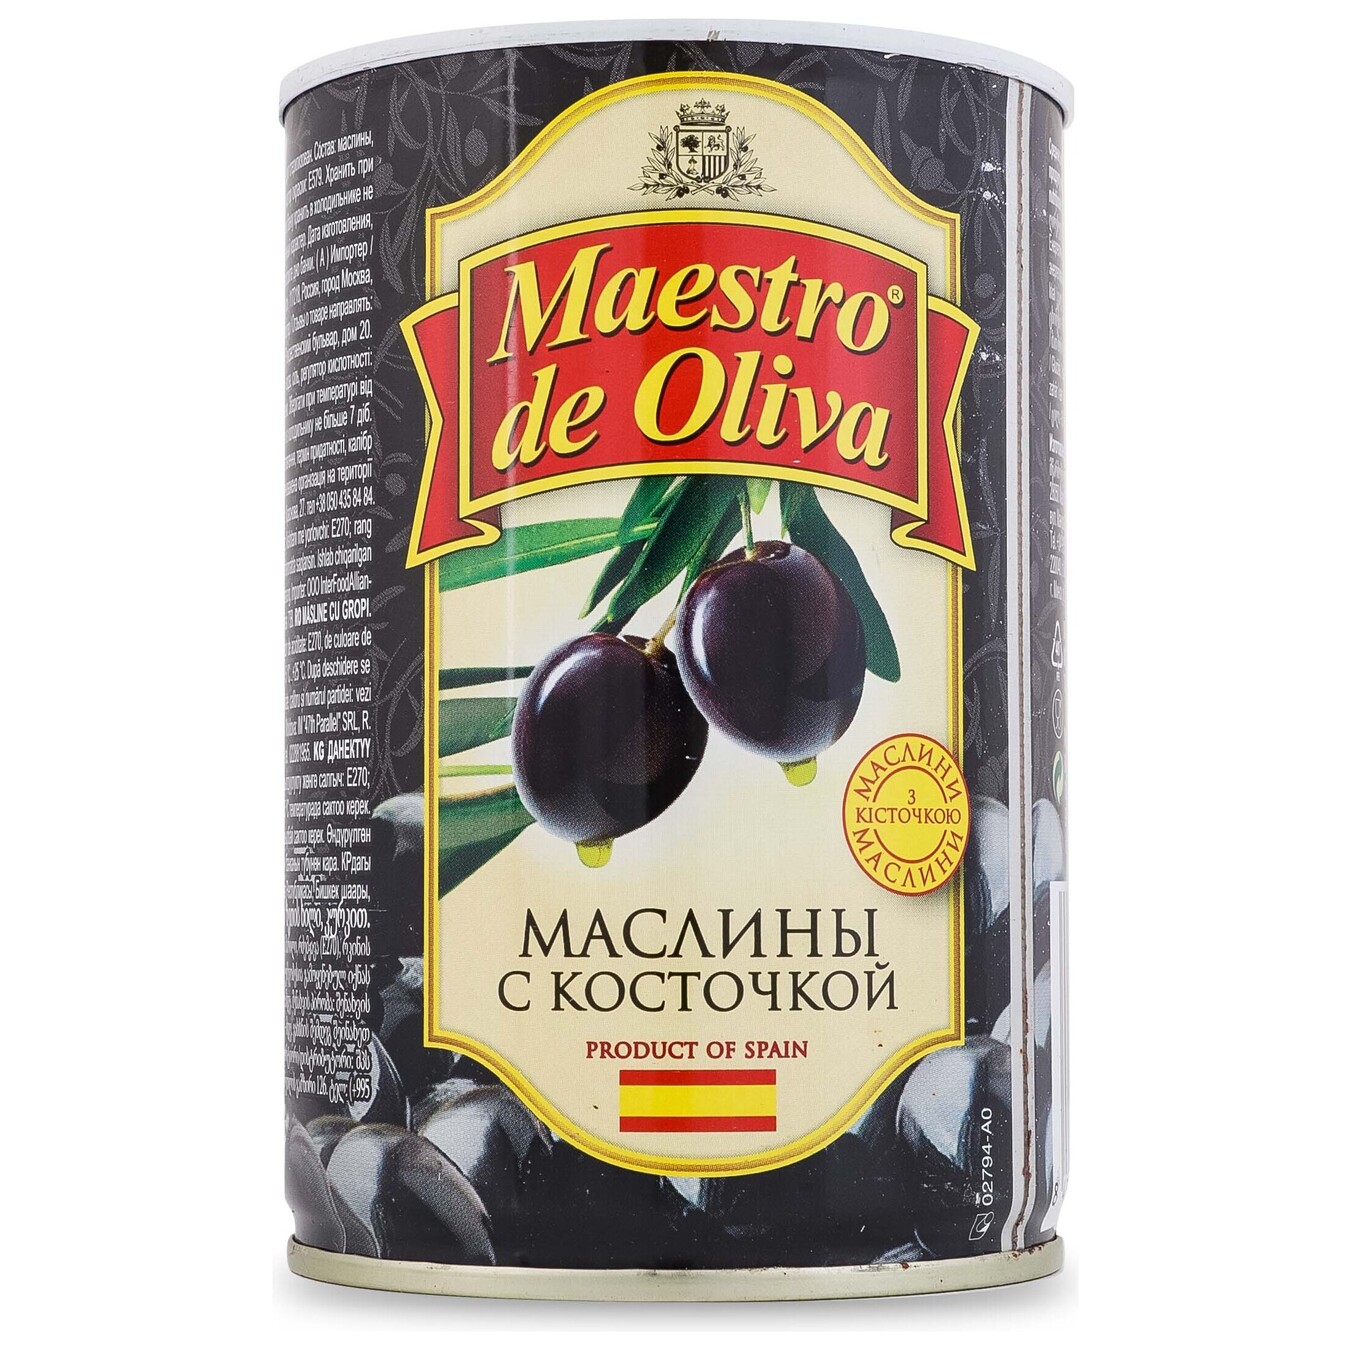 Маслины Maestro de Oliva черные с косточкой 420г